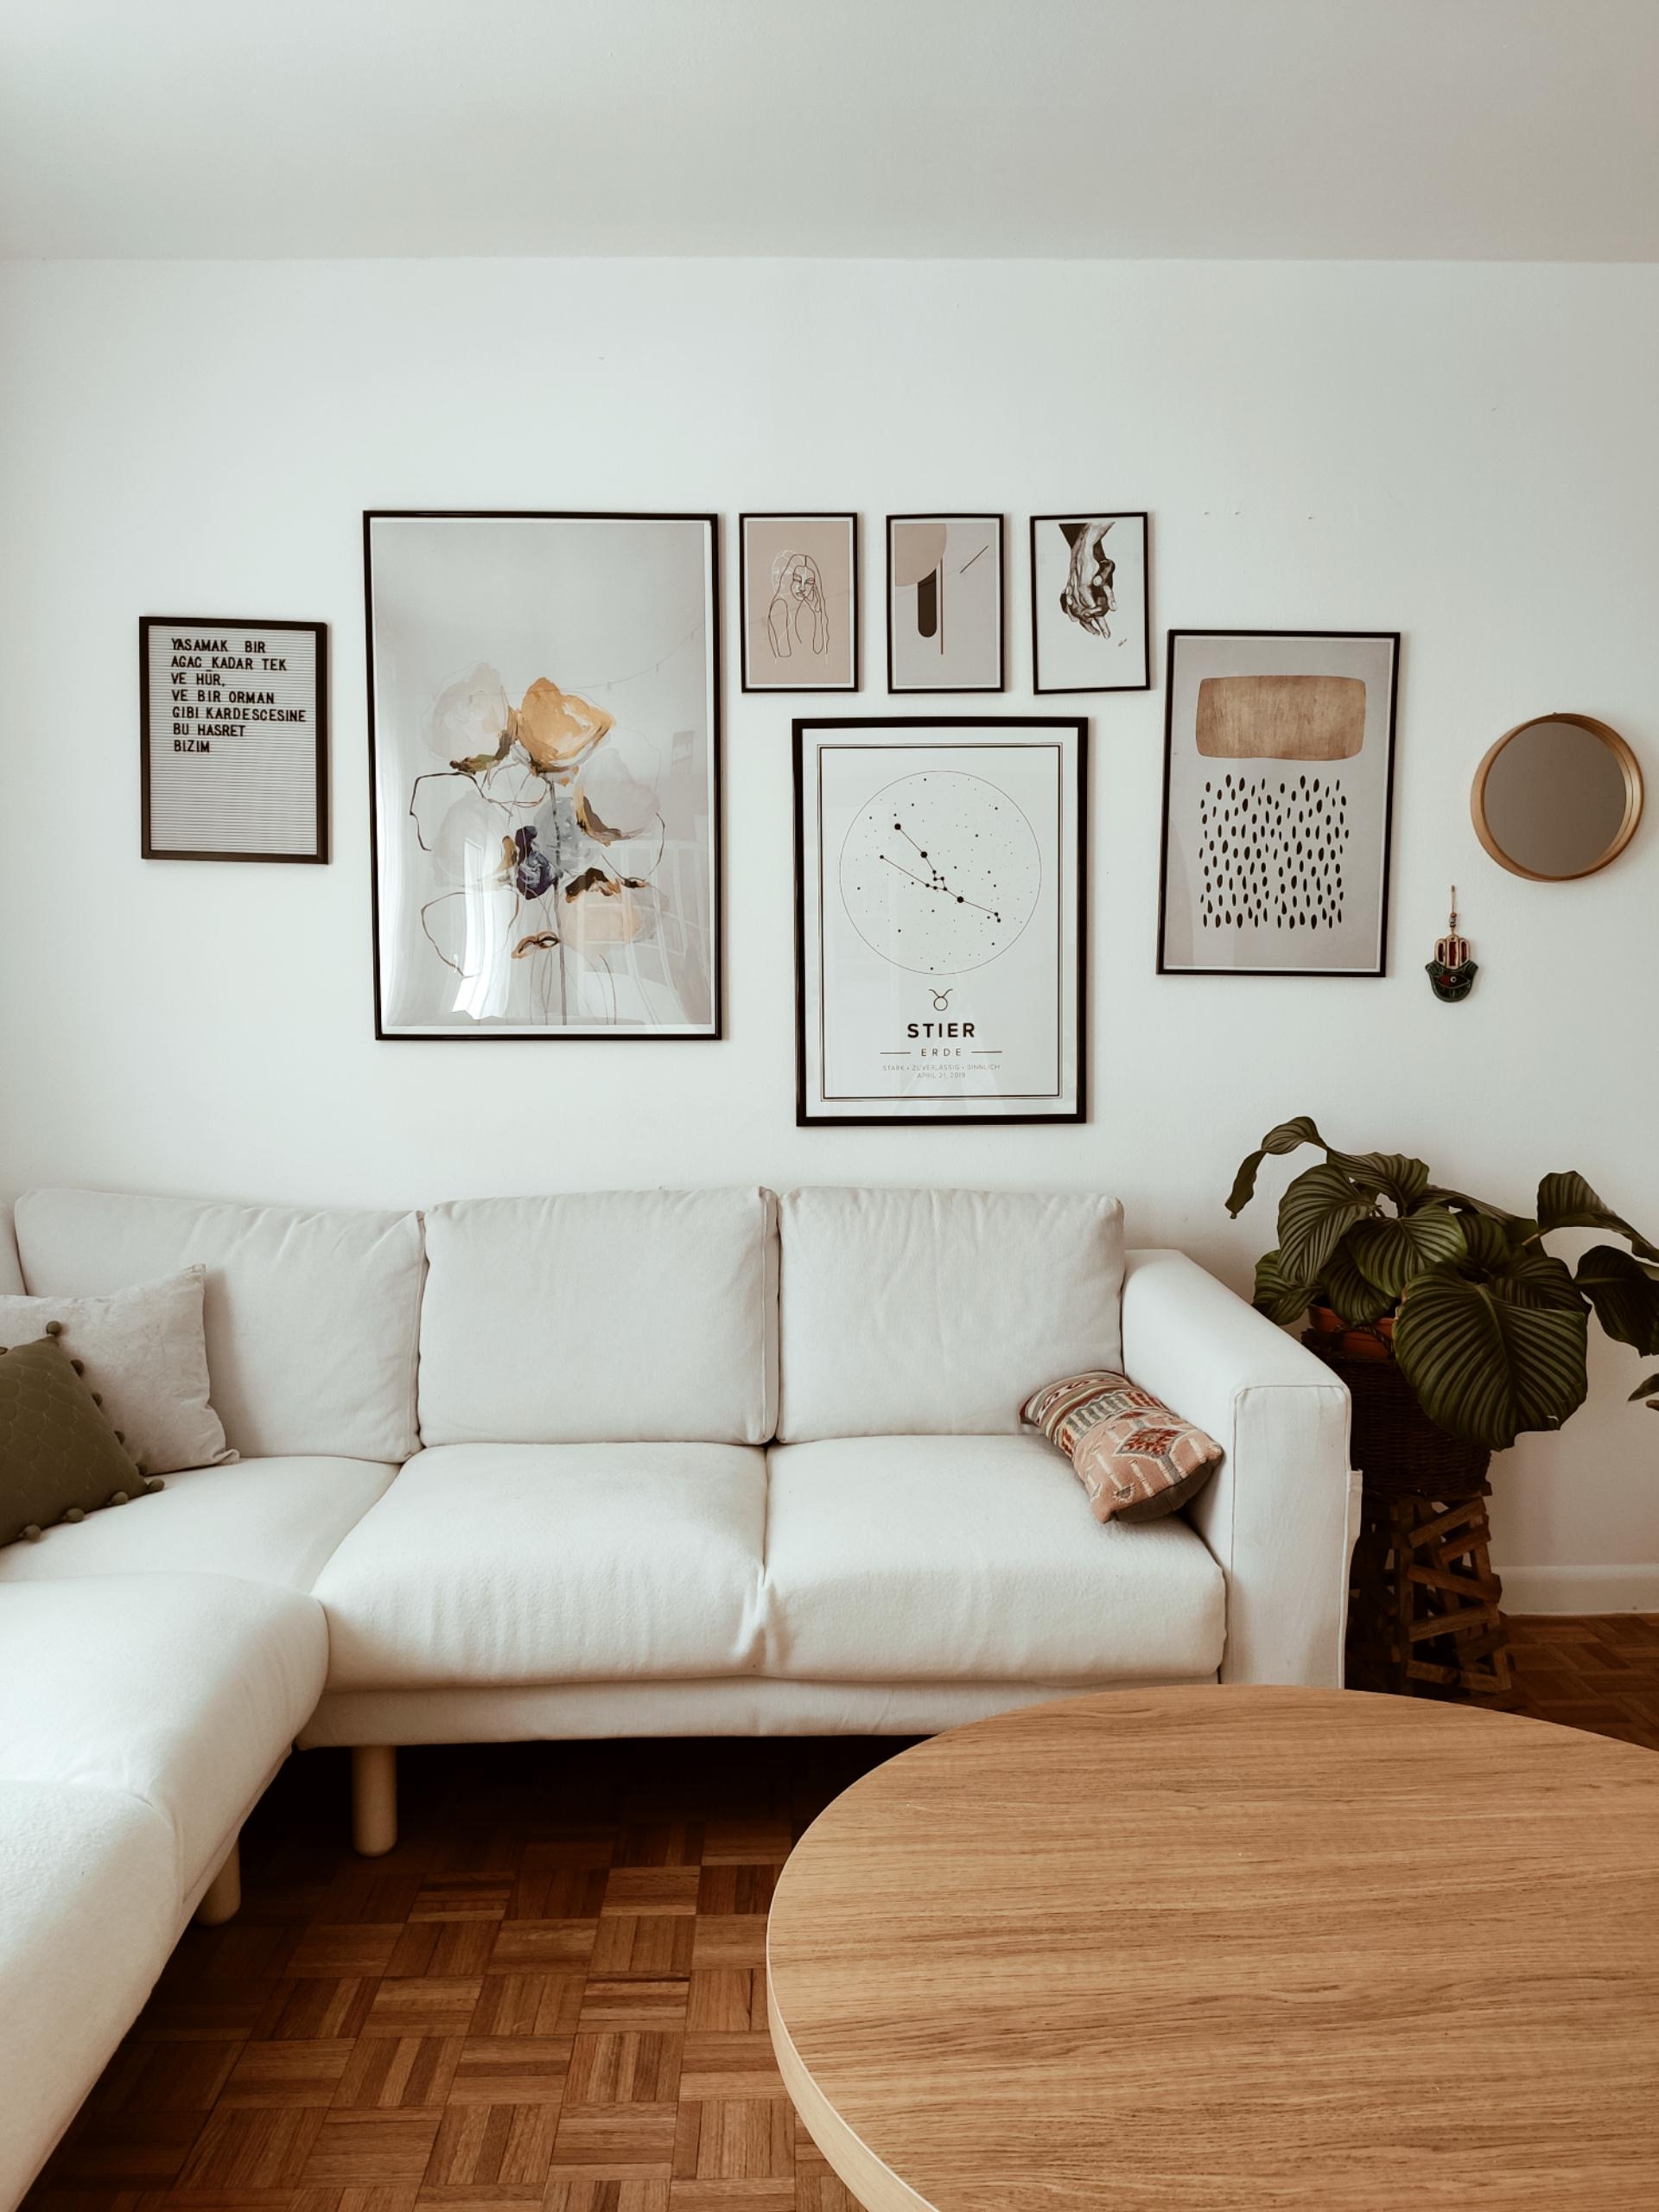 Nun ist die Bilderwand im Wohnzimmer auch komplett, jippiiiii🌞🙌 wie findet ihr sie?
#bohohome #cozyhomeshots #home